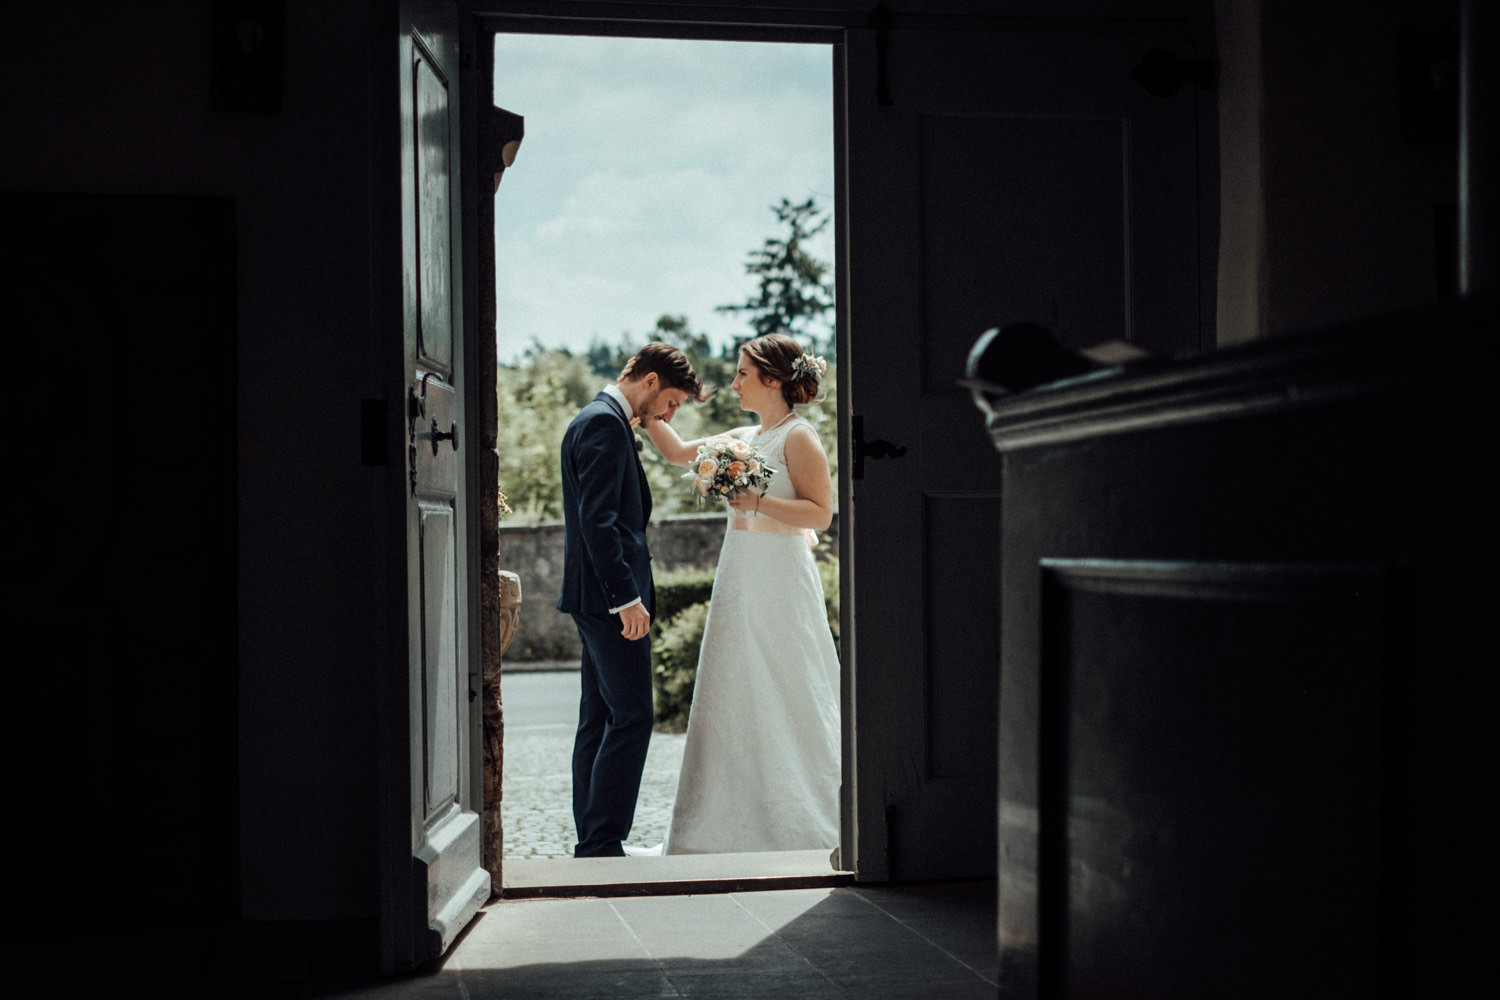 Zelthochzeit-Inspiration-Hochzeitsreportage-natürlich-Hessenhof-Coburg-Oberfranken-Aachen-Hochzeitsfotograf-Kevin Biberbach-KEVIN Fotografie-Junebug-Hochzeitswahn-045.jpg